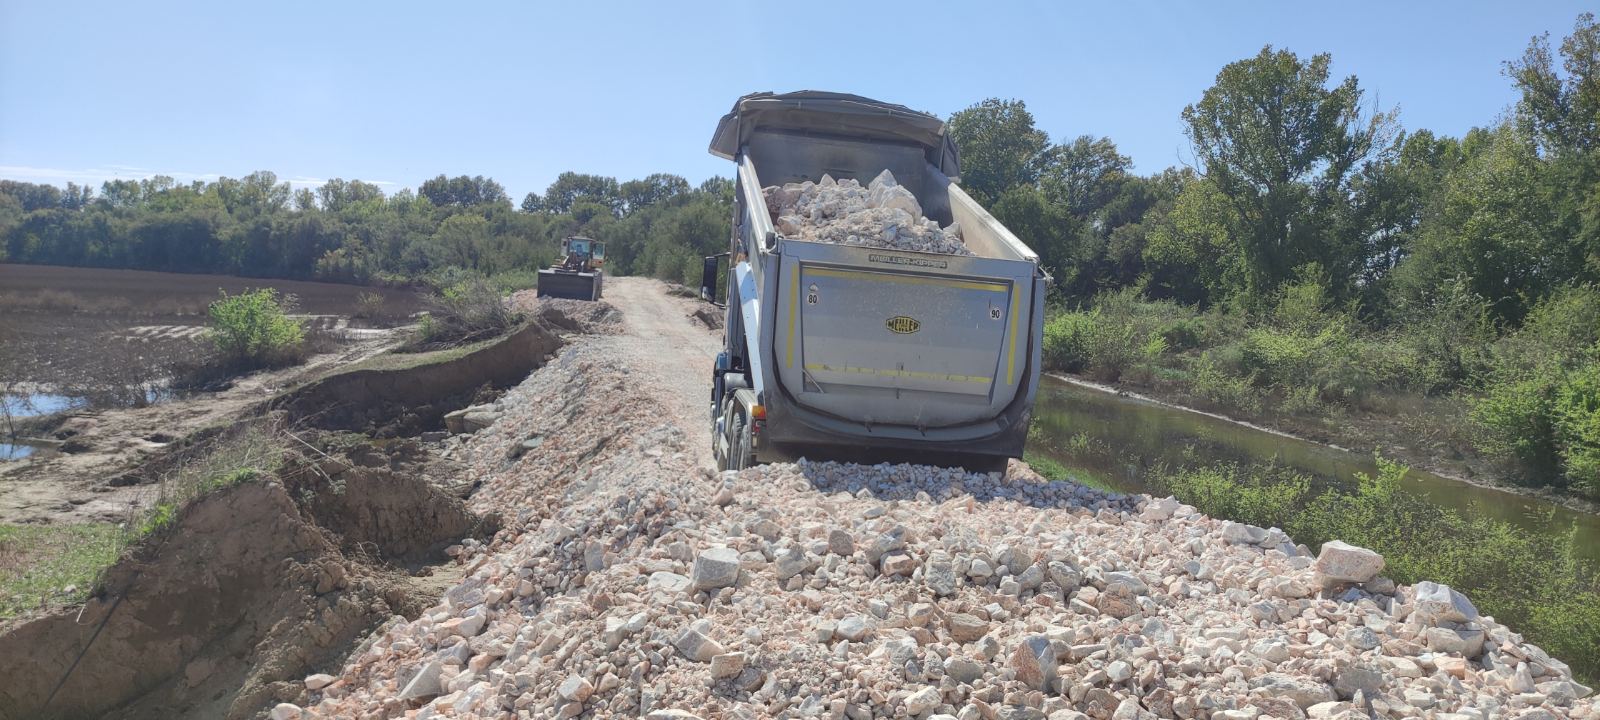 Περιφέρεια Θεσσαλίας: Συνεχίζονται με εντατικούς ρυθμούς οι εργασίες αποκατάστασης οδικών δικτύων και καθαρισμού ποταμών